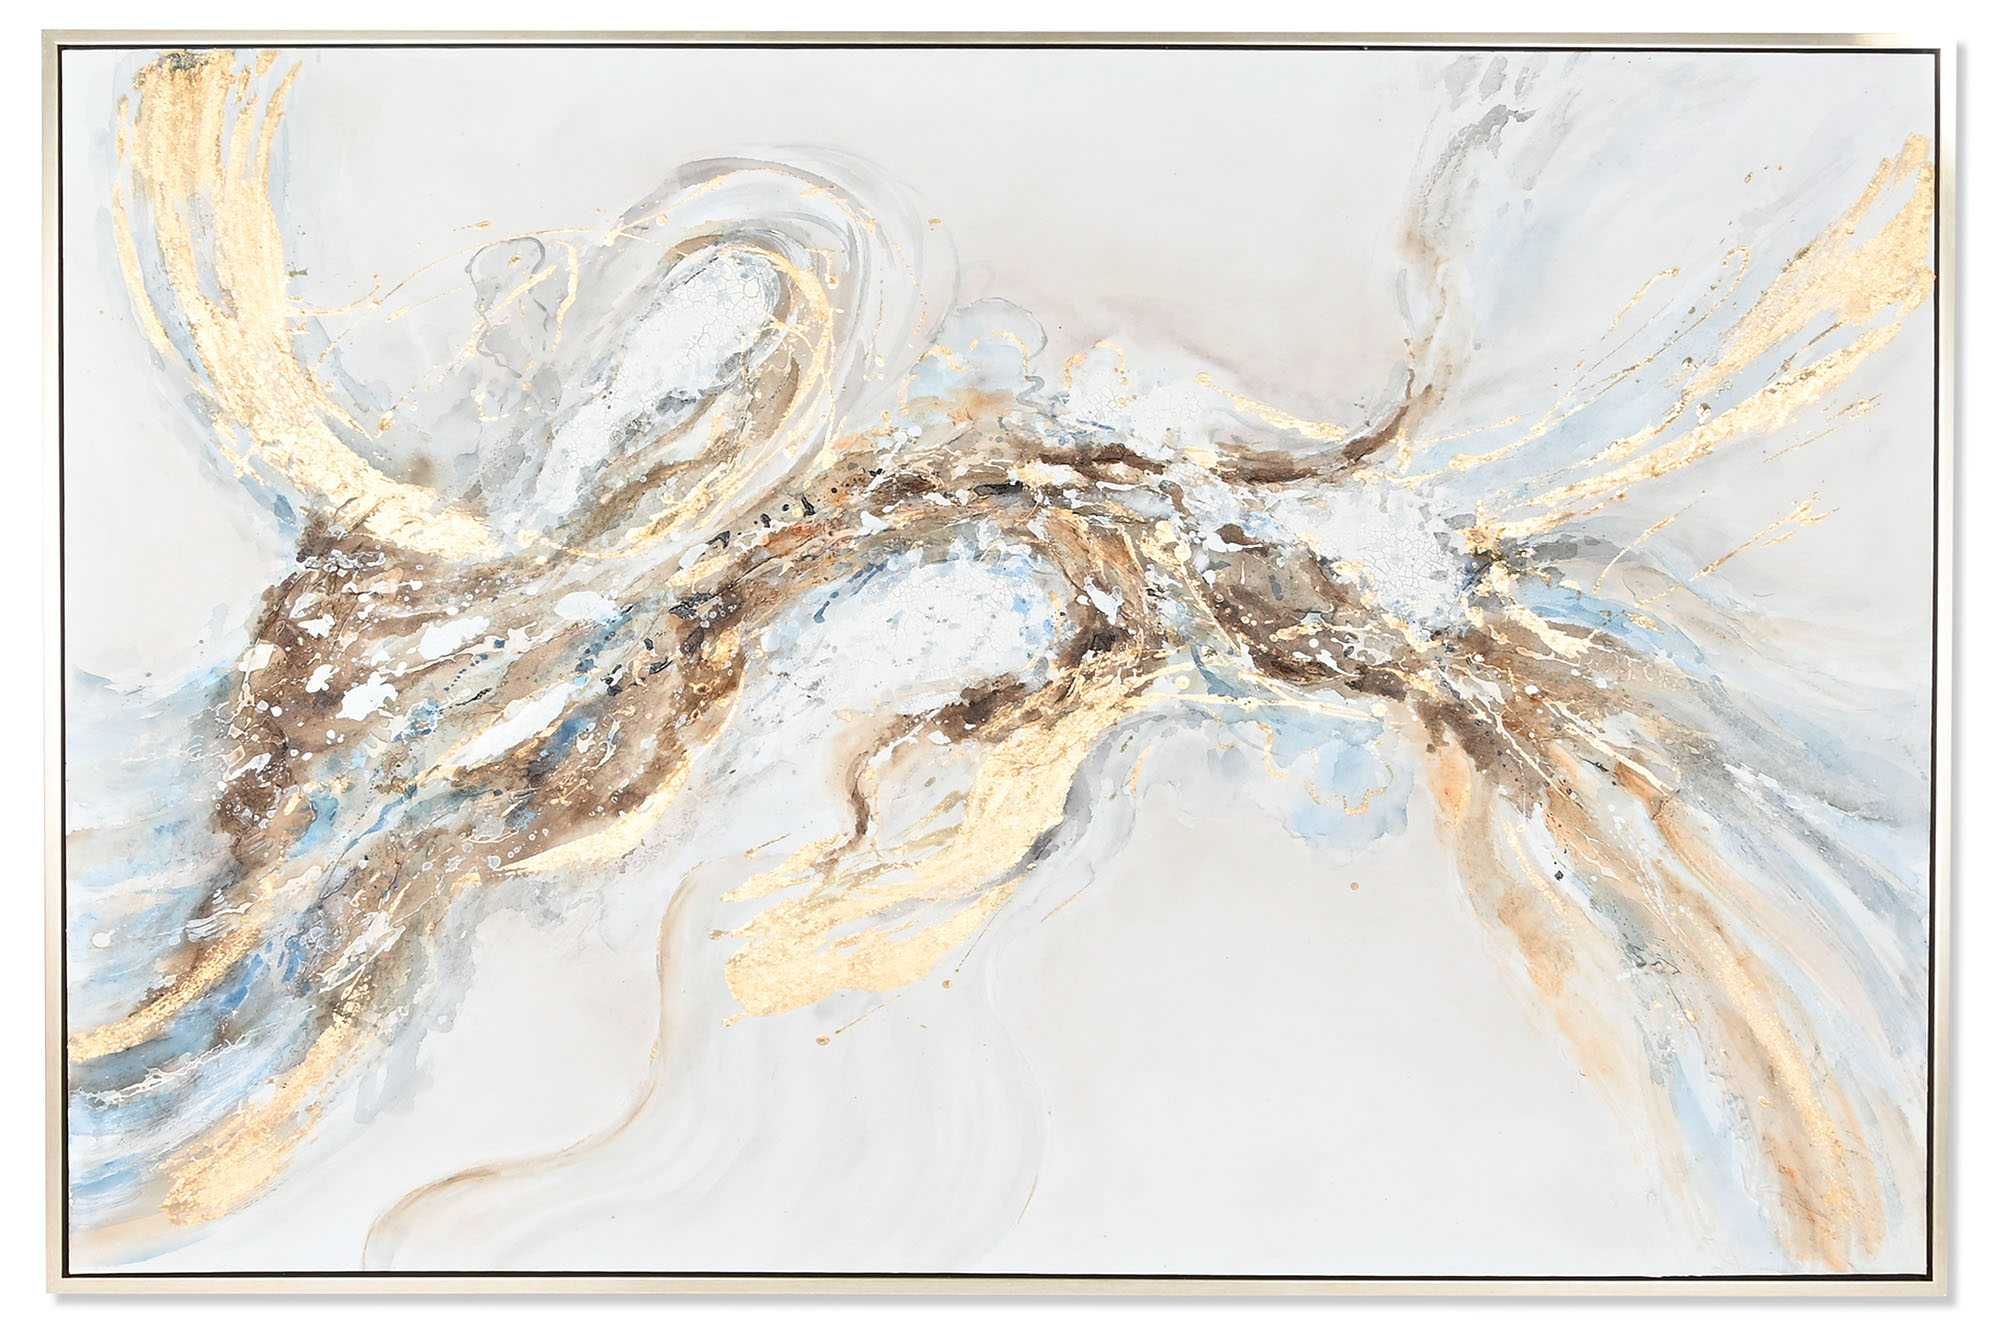 Quadro Pintado Dourado e Branco grande dimensão 187x126cm By Arcoazul